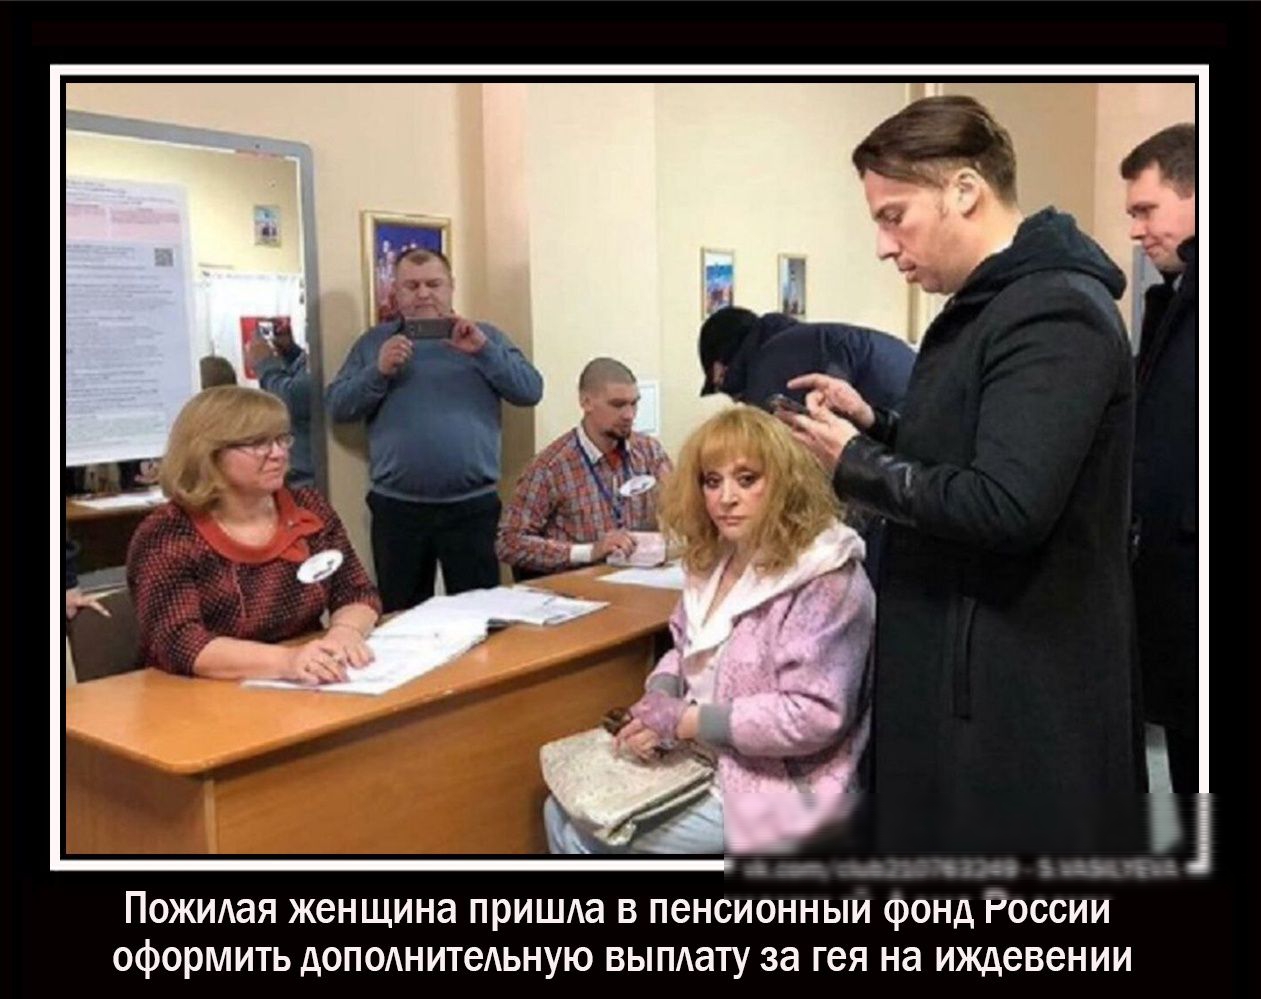 _ _ _ ез ъзіё і ПОЖИАаЯ женщина прИШАа в пенсионныи ронд России оформить допмнитеАьную вымату за гея на иждевении